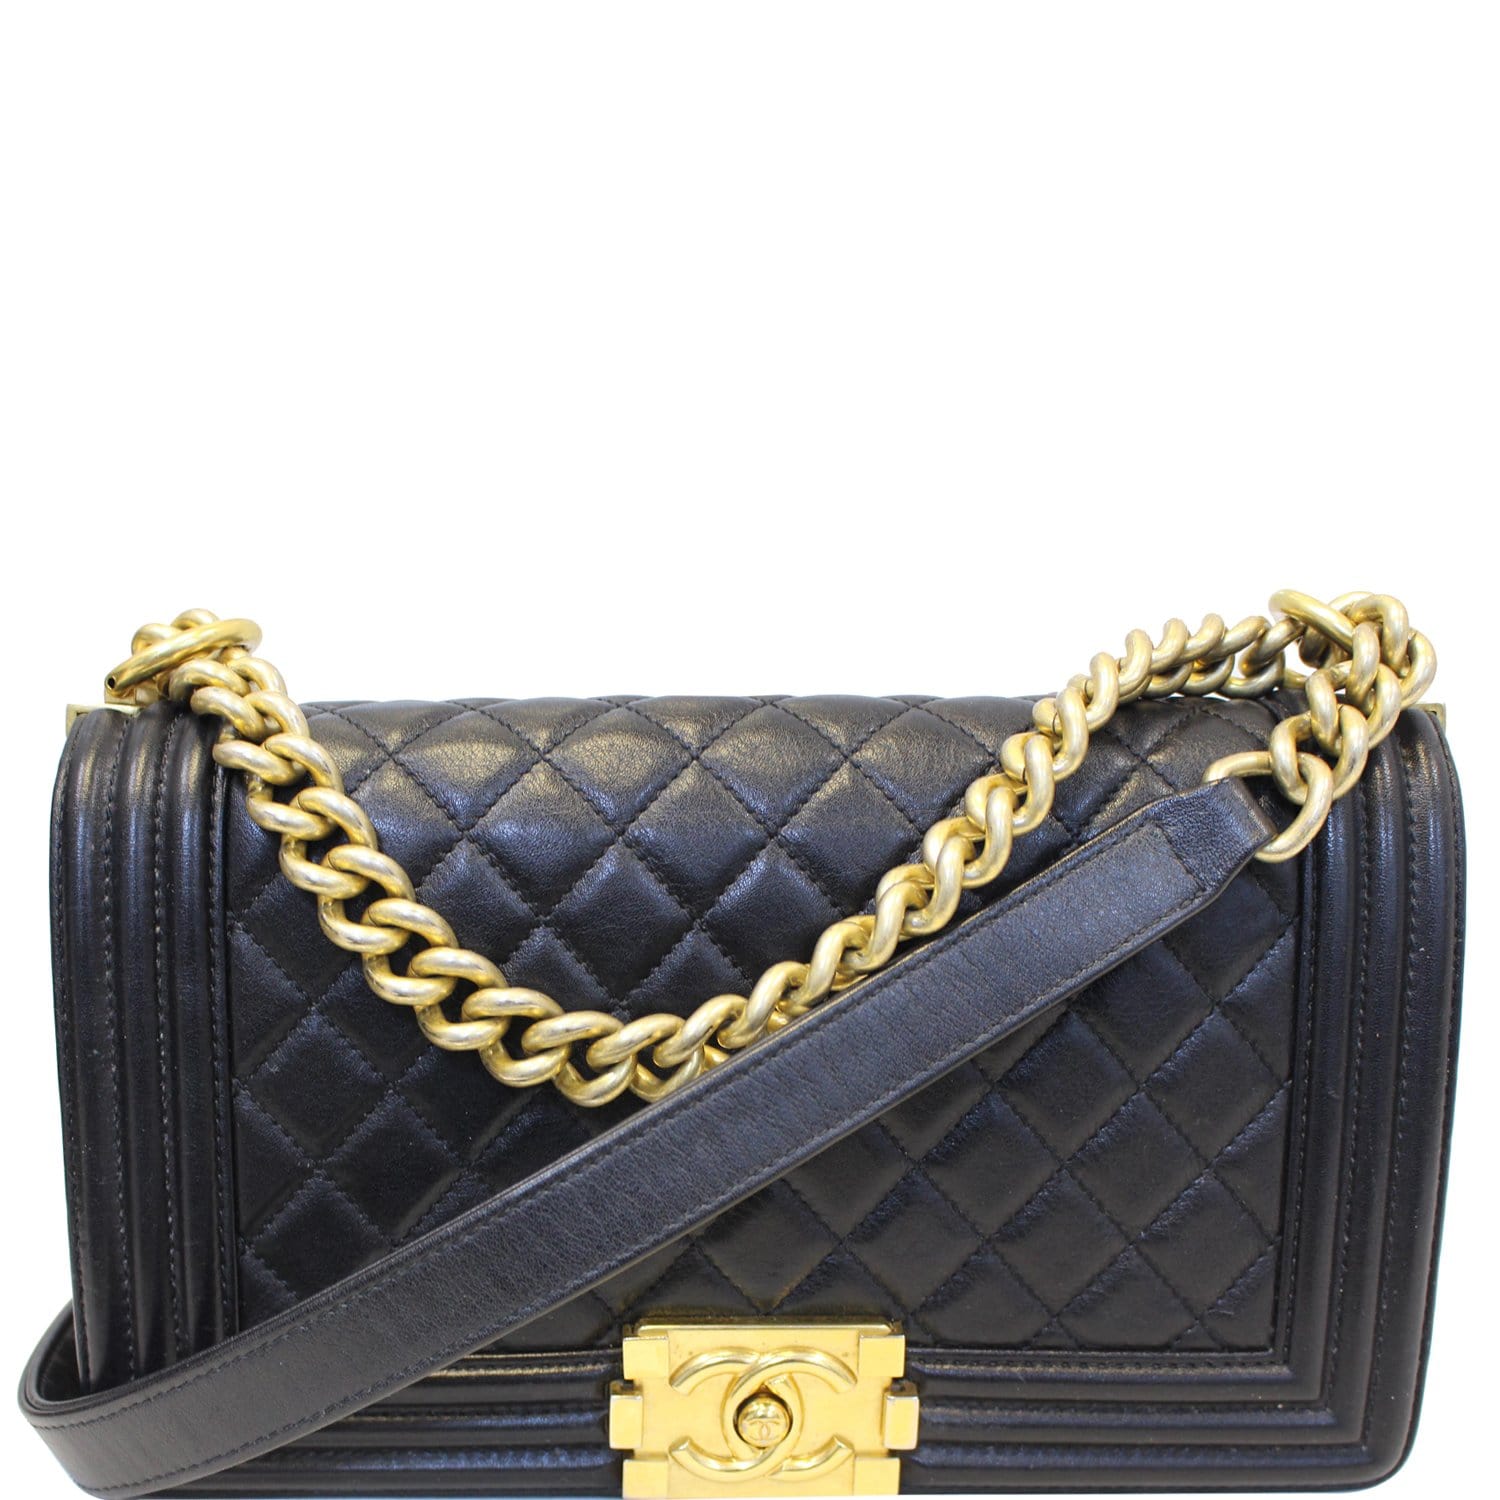 Chanel Le Boy Medium Flap Bag Caviar Leather Black